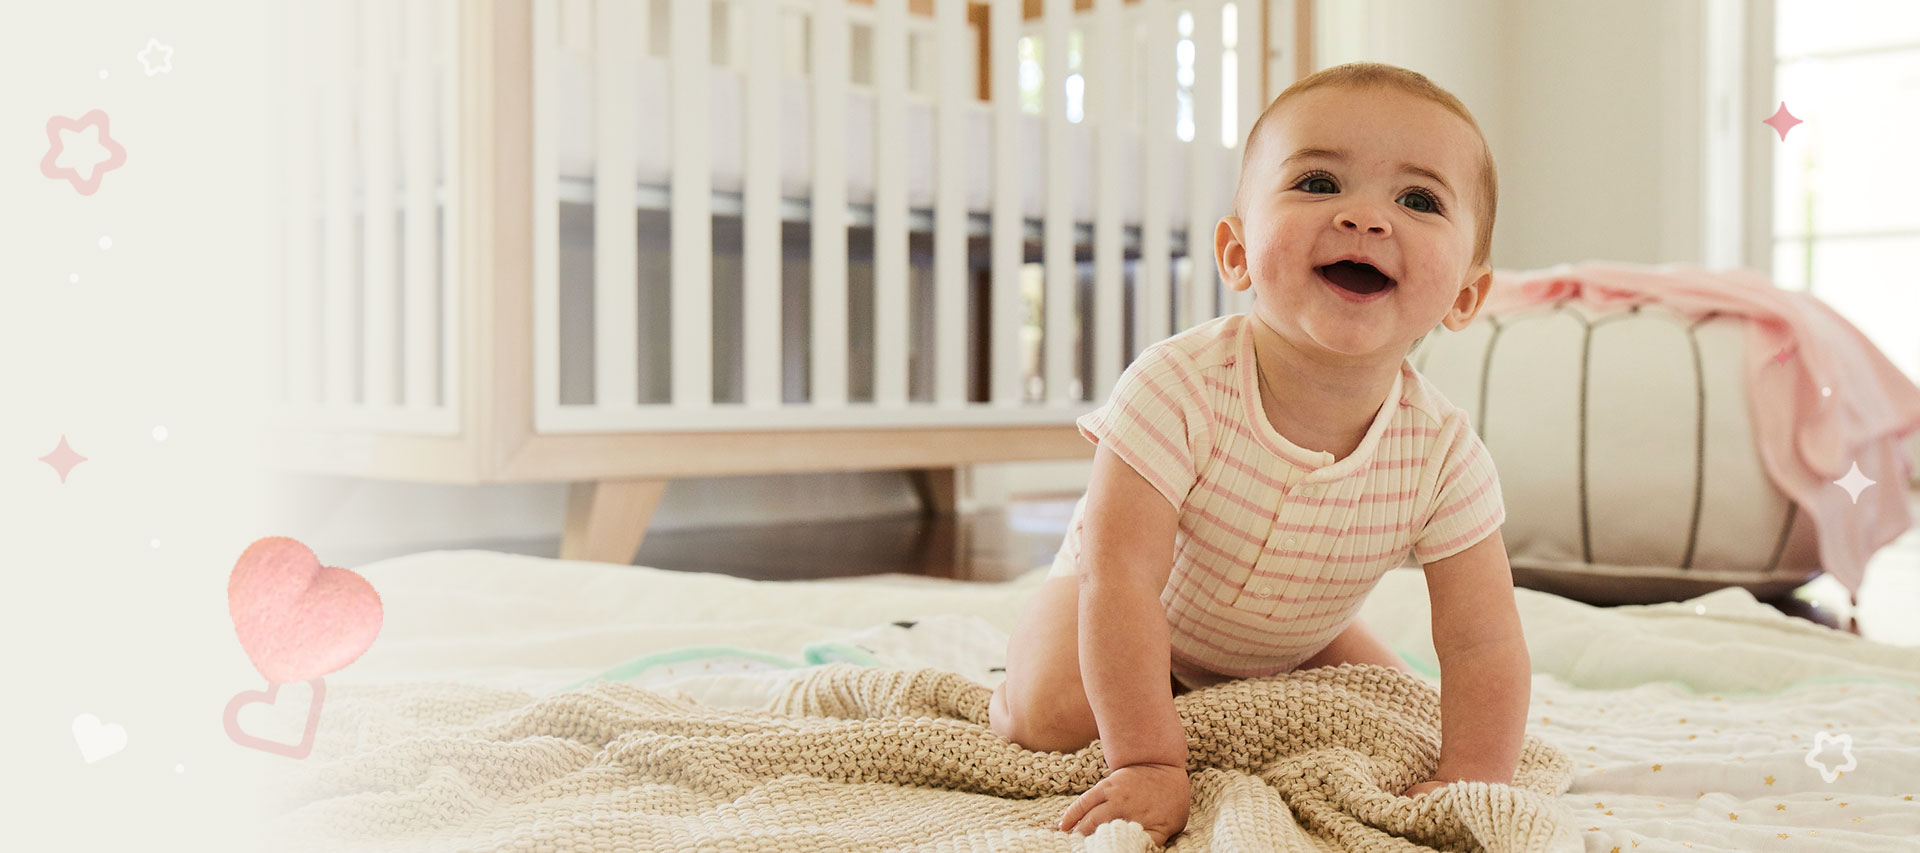 Alguna vez habías dudado sobre cuándo utilizar un detergente u otro? 🤔 Norit  Bebé es especial para bebés, pero si ya tiene más de 24 meses puedes